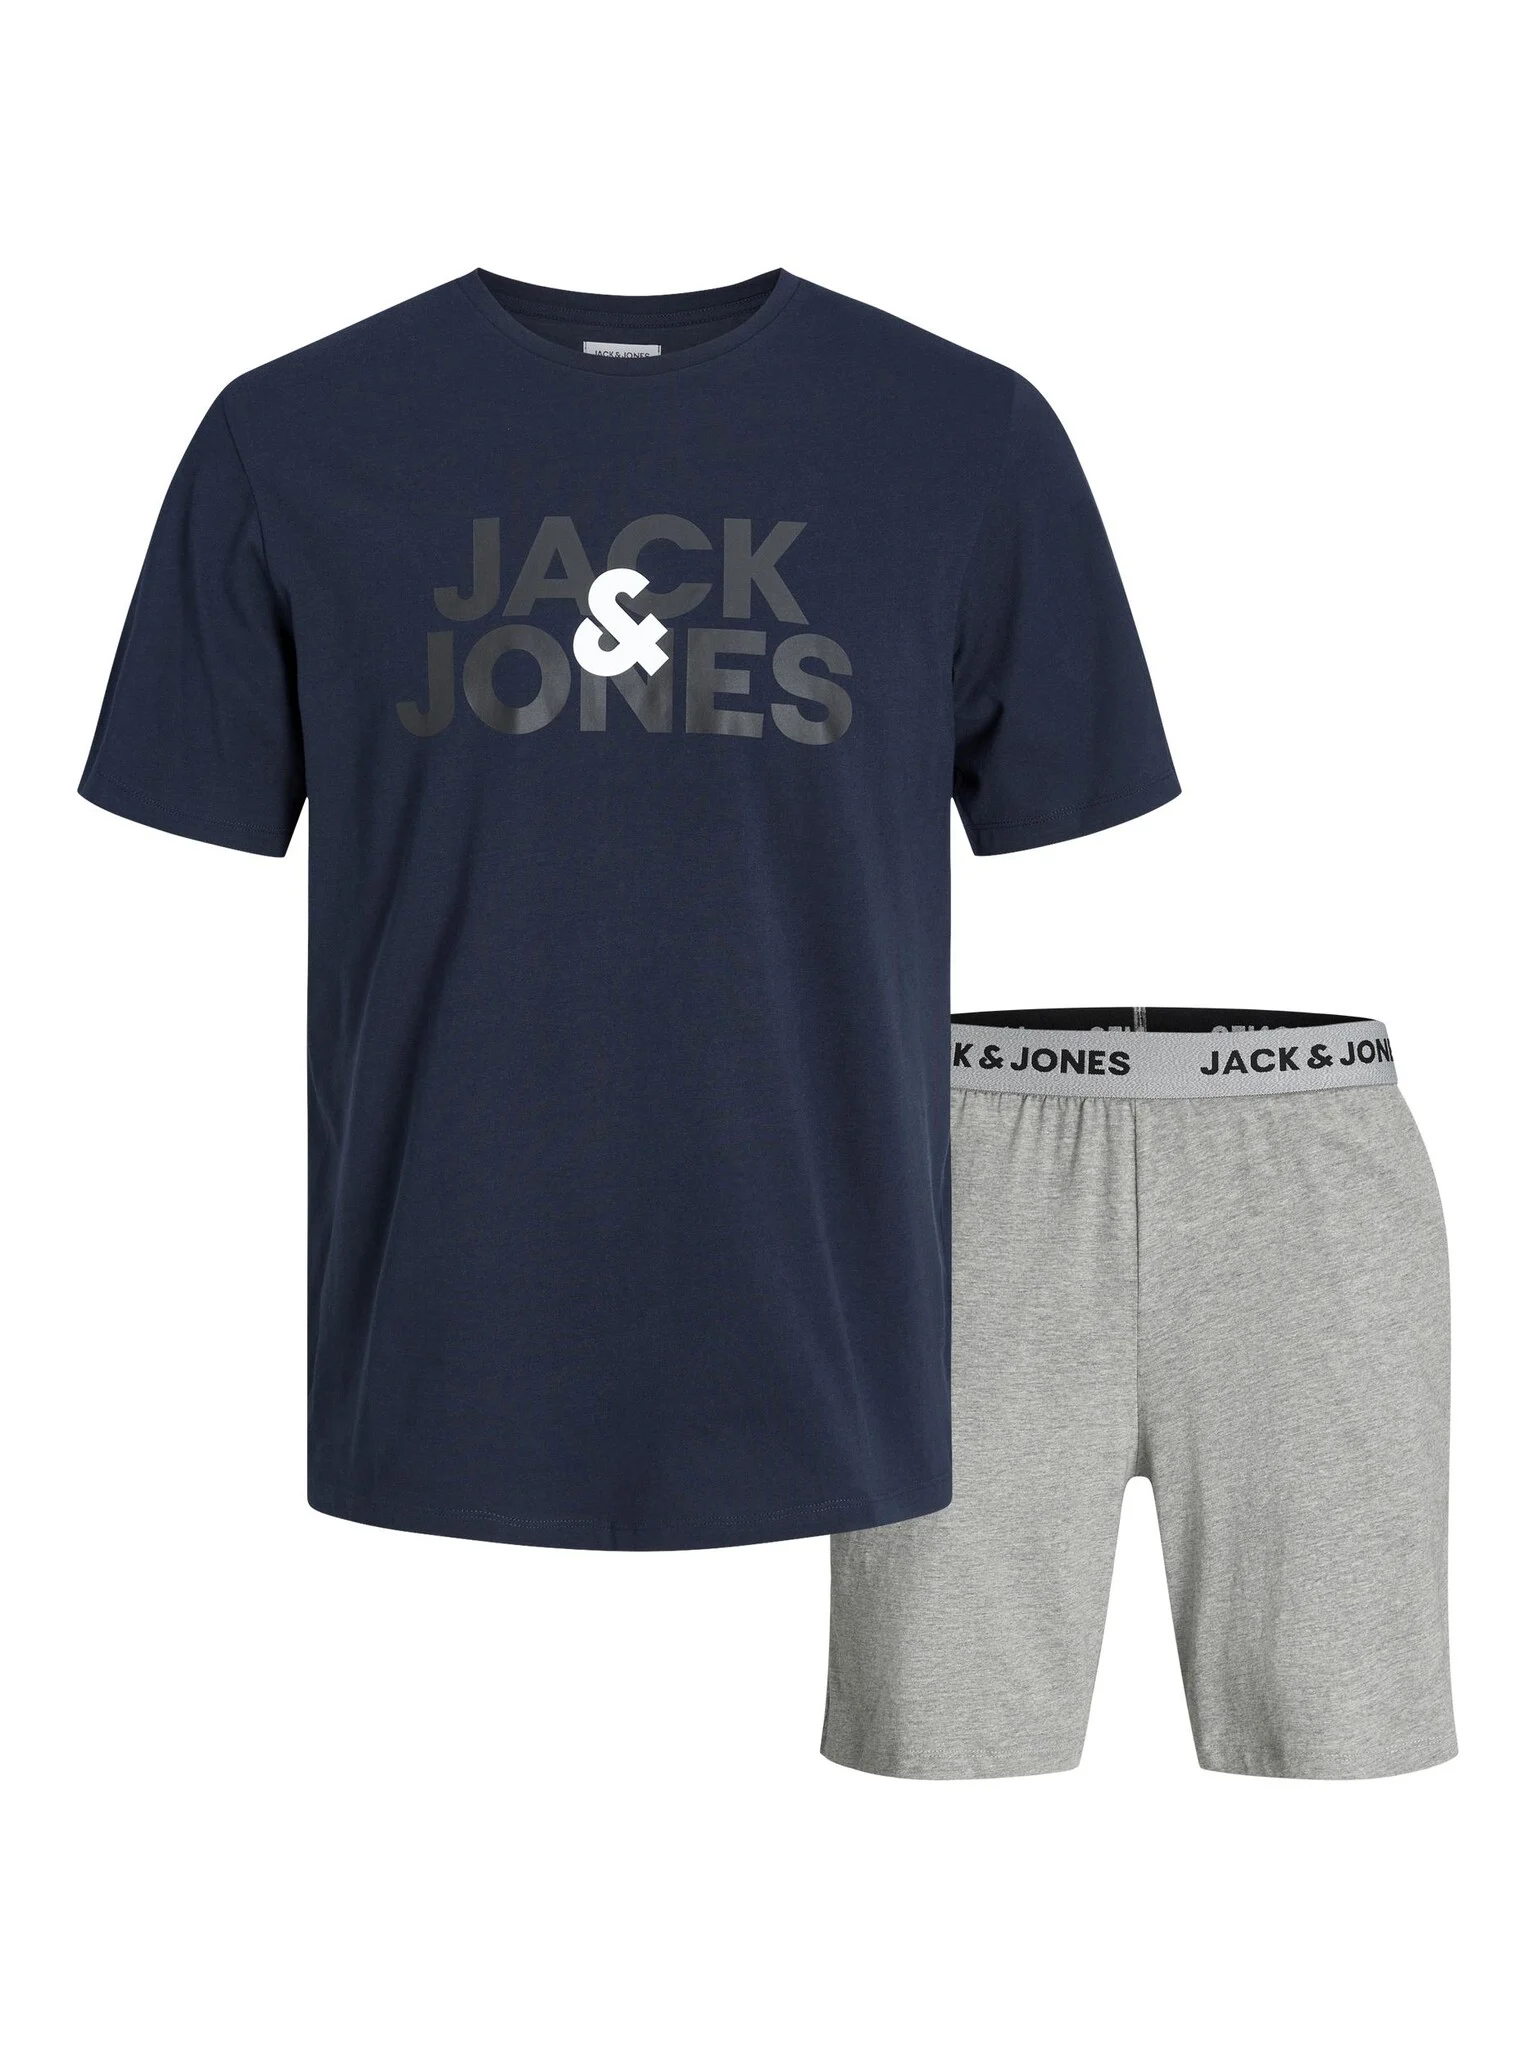 Afbeelding van Jack & Jones Heren korte shortama pyjamaset jacula donkerblauw/grijs